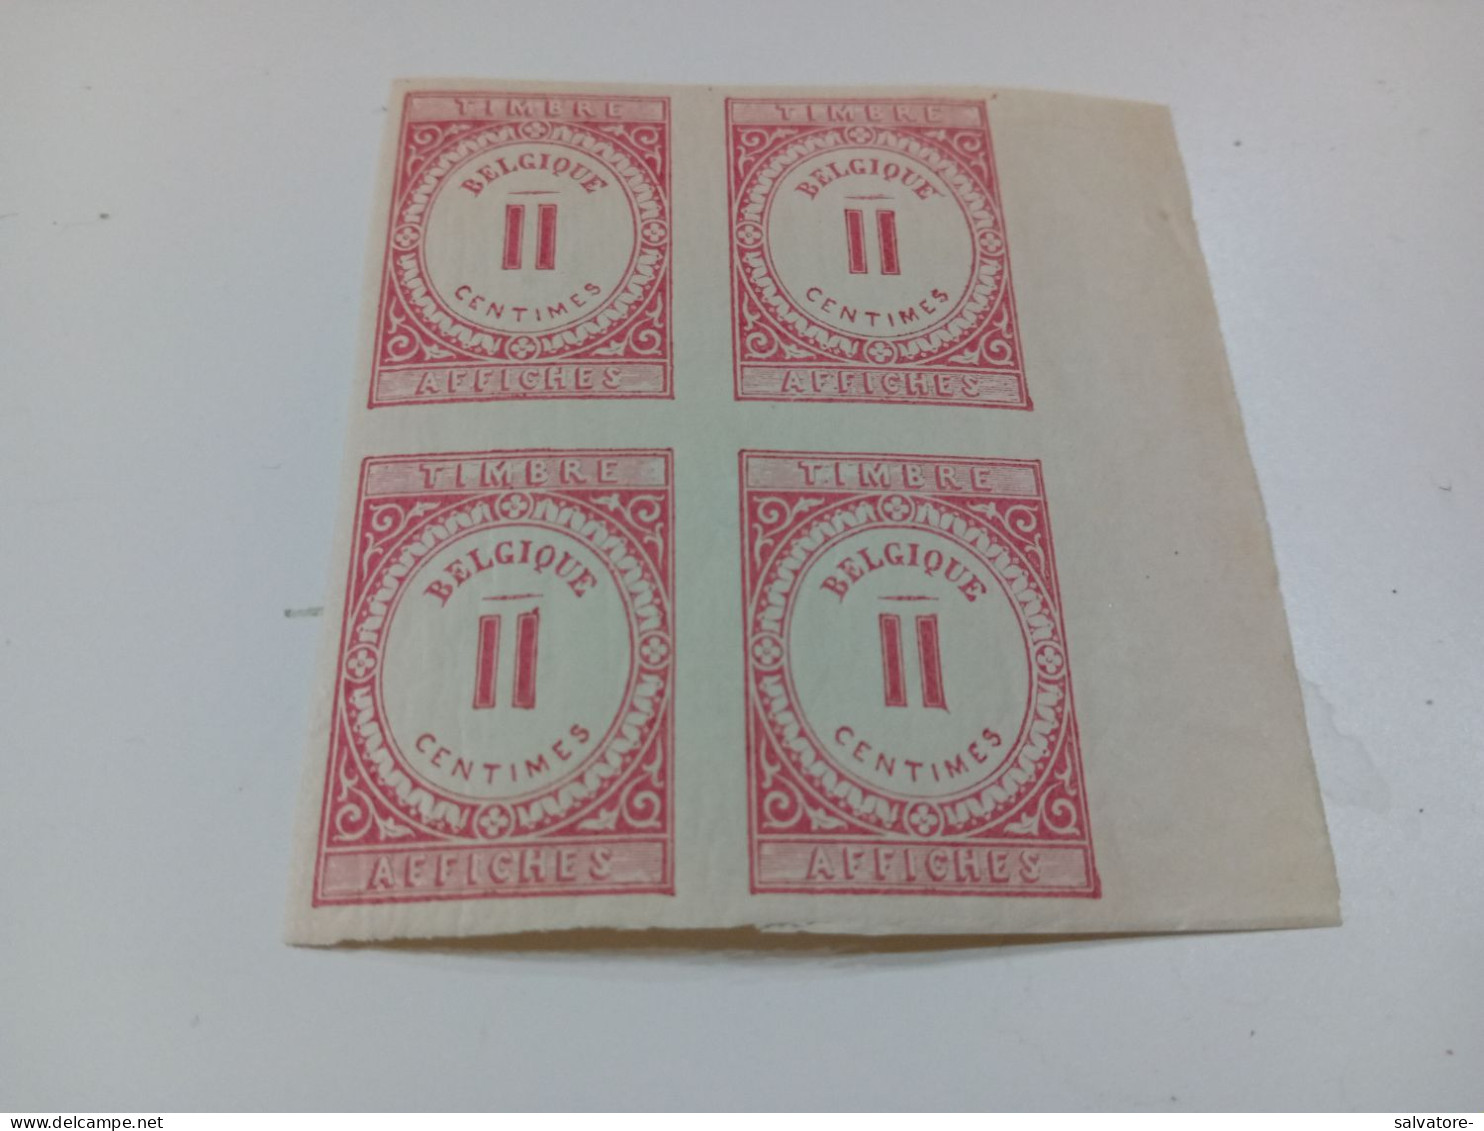 4 MARCHE DA BOLLO II CENTIMES AFFICHES- NUOVI - Stamps